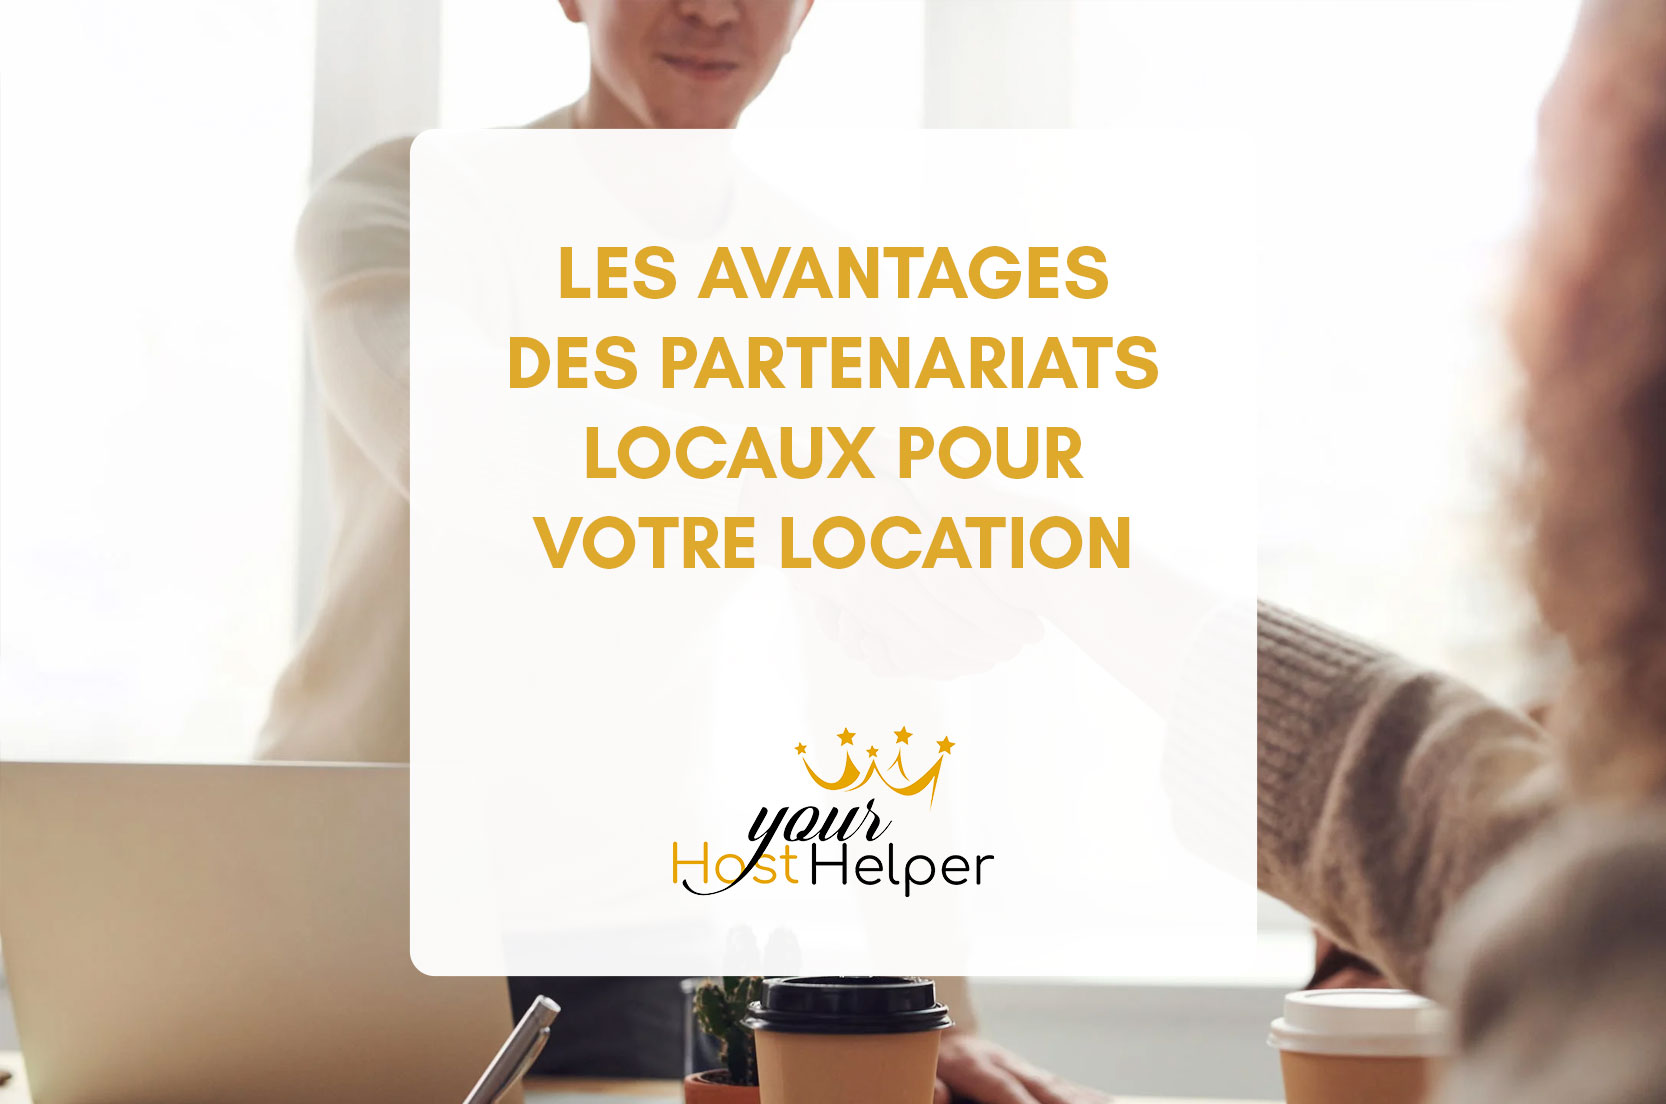 You are currently viewing Les avantages des partenariats locaux pour votre location Airbnb